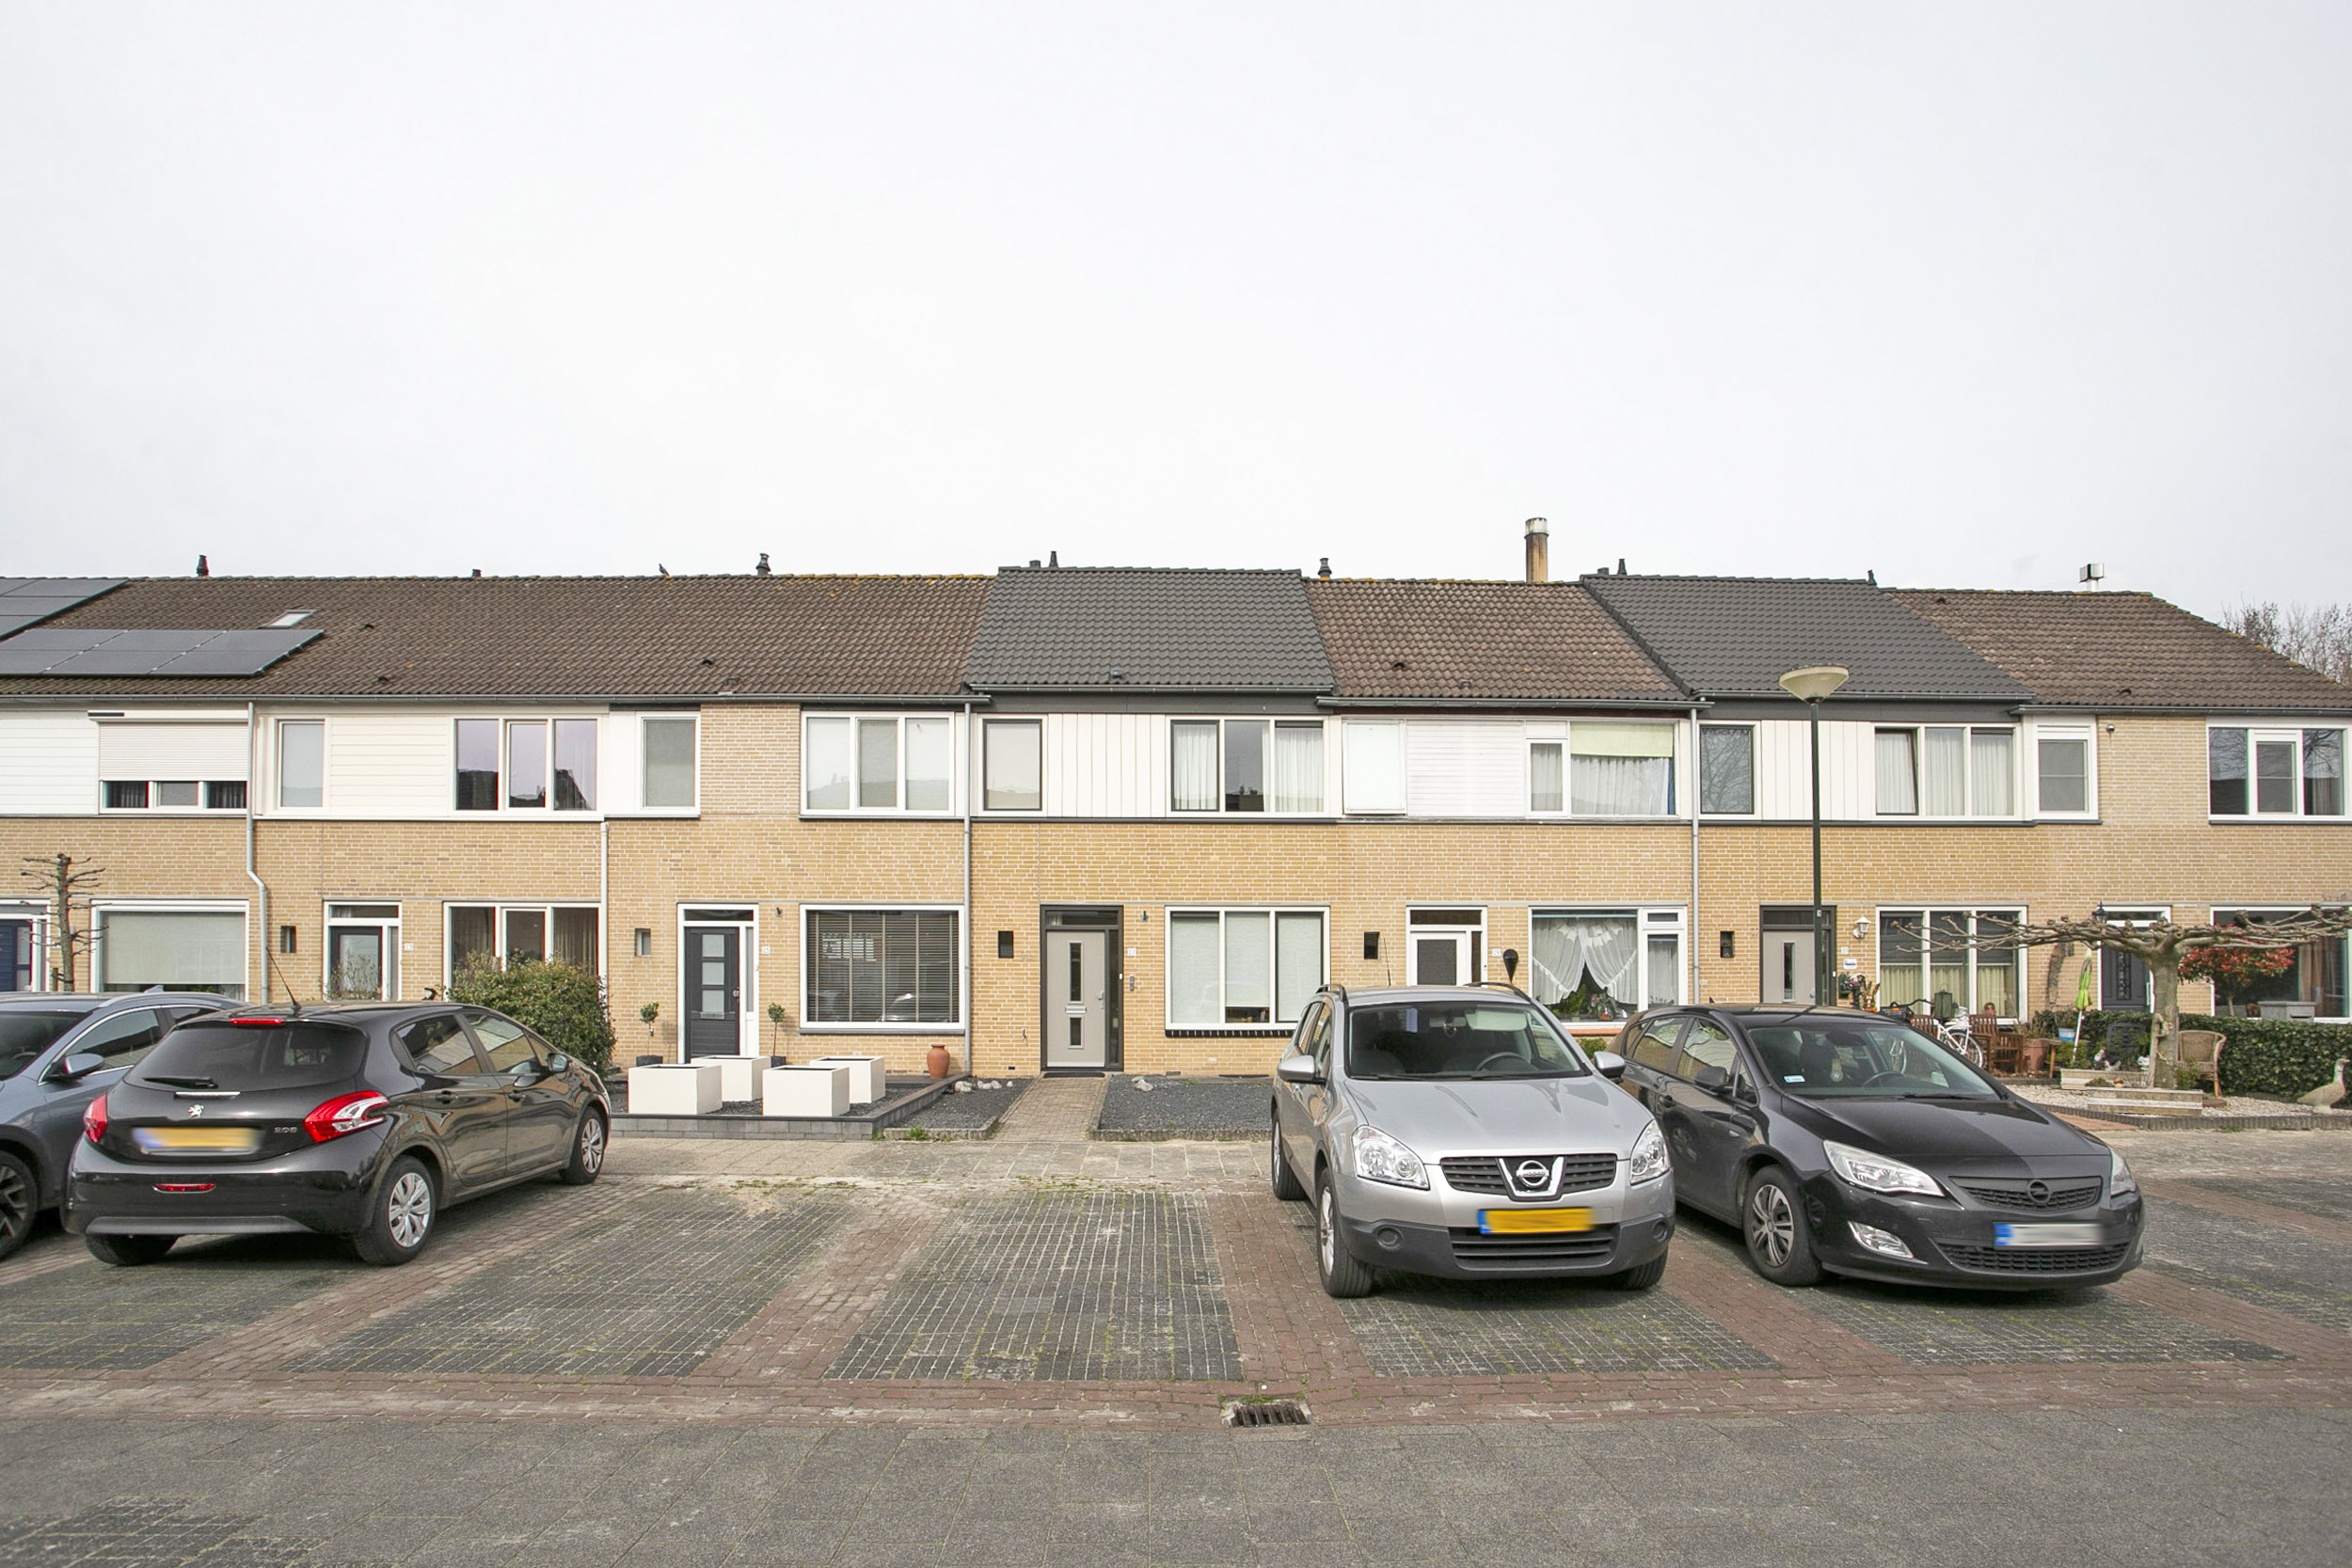 Polanenstraat 27, 4931 XB Geertruidenberg, Nederland